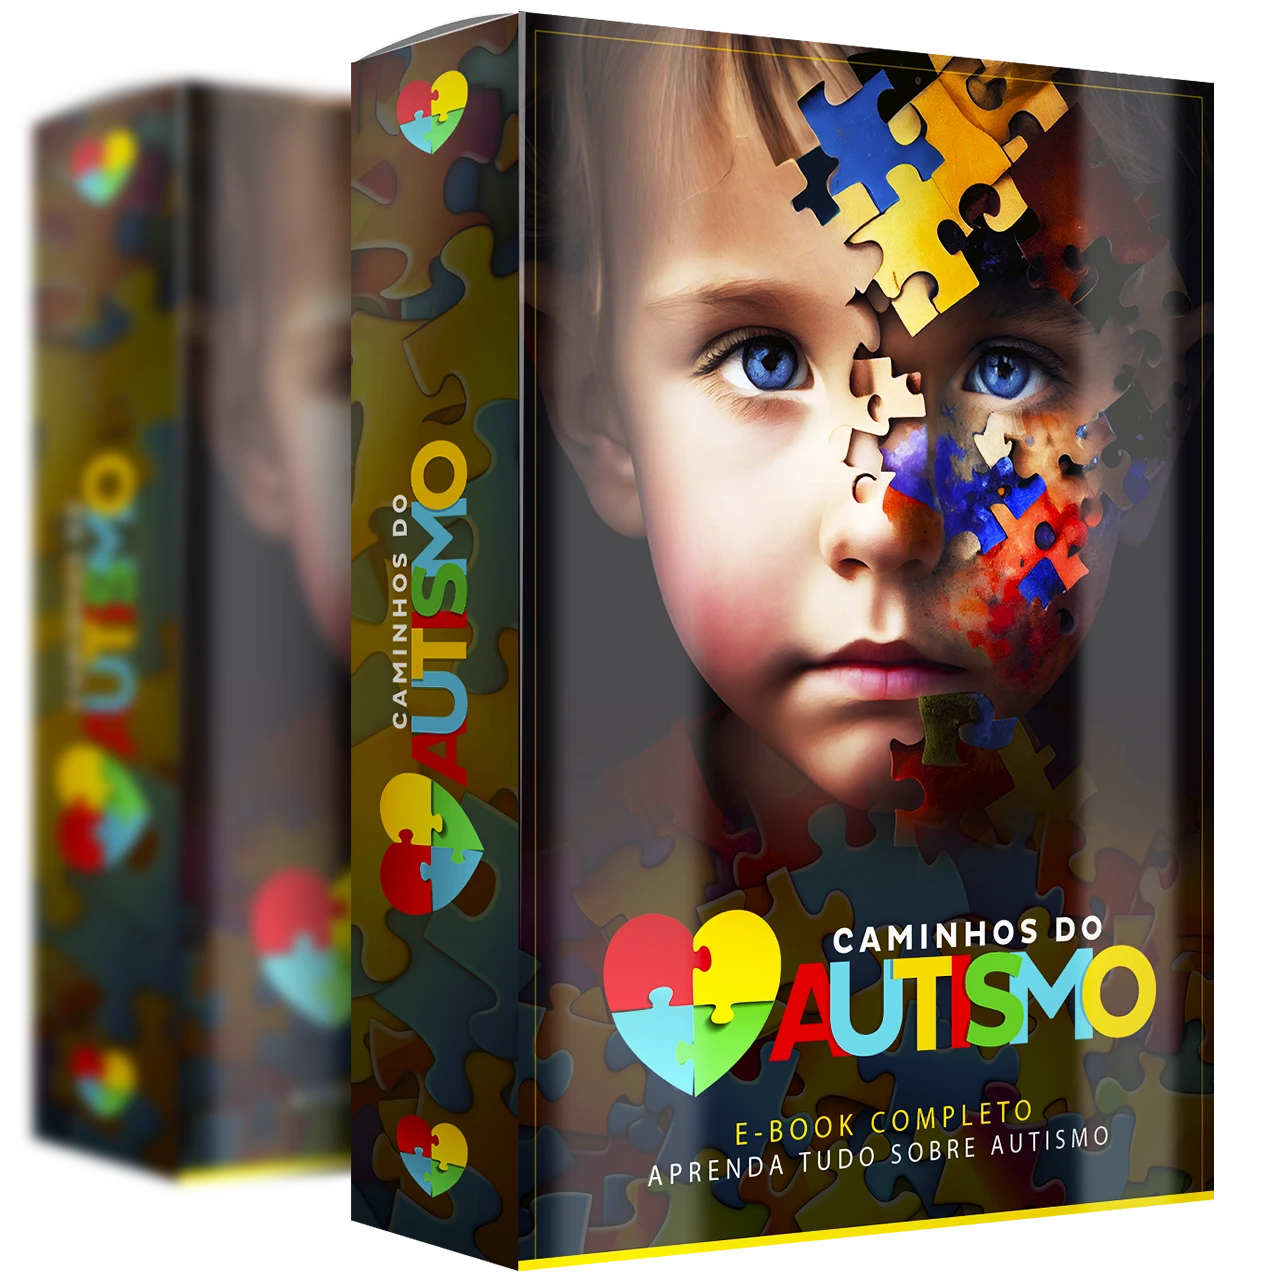 Desvende os mistérios do autismo e promova o bem-estar!